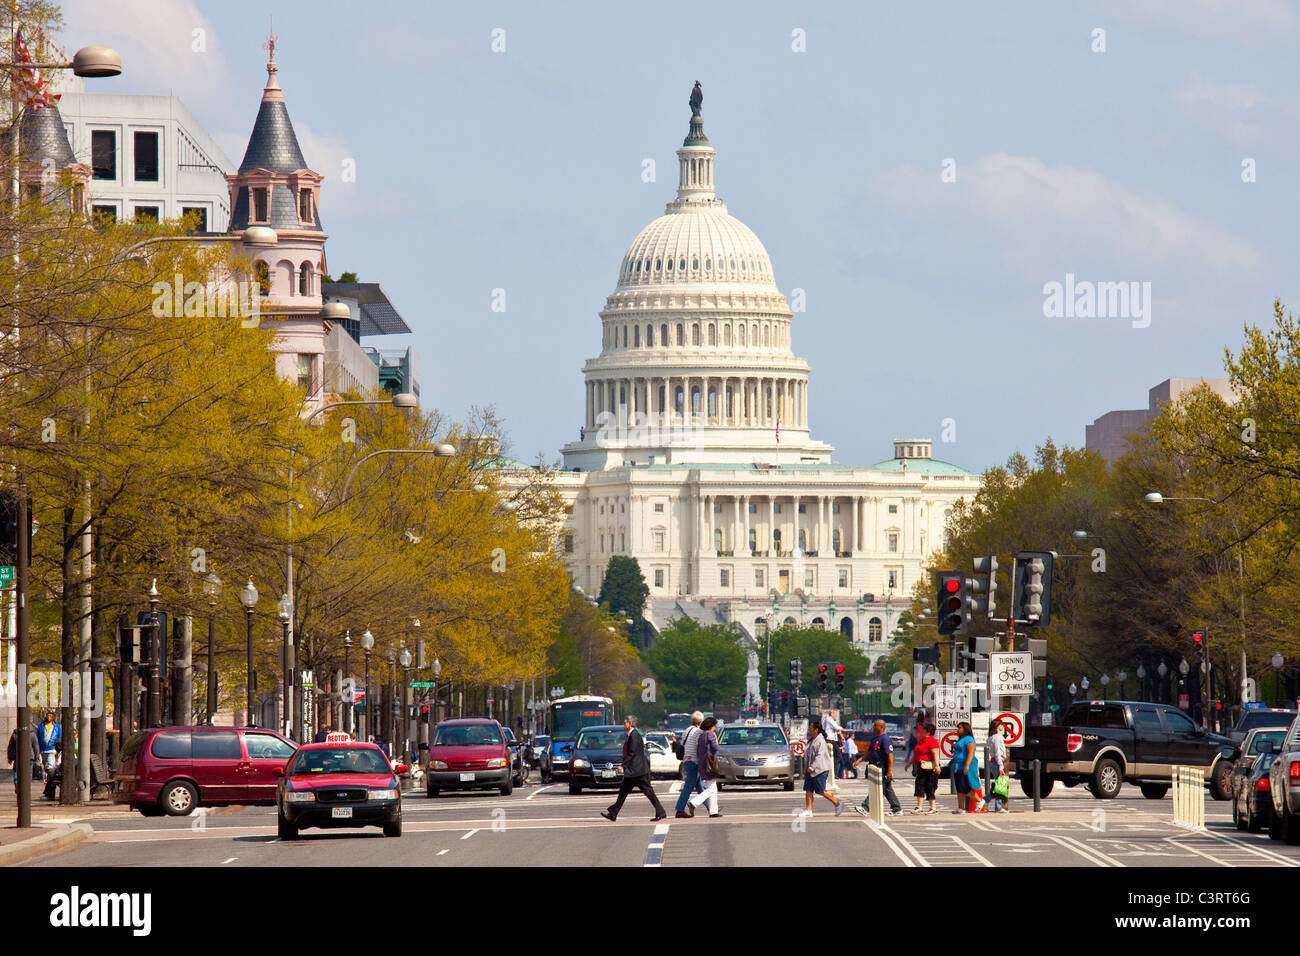 Edificio del Capitolio, Washington, D.C. Foto de stock